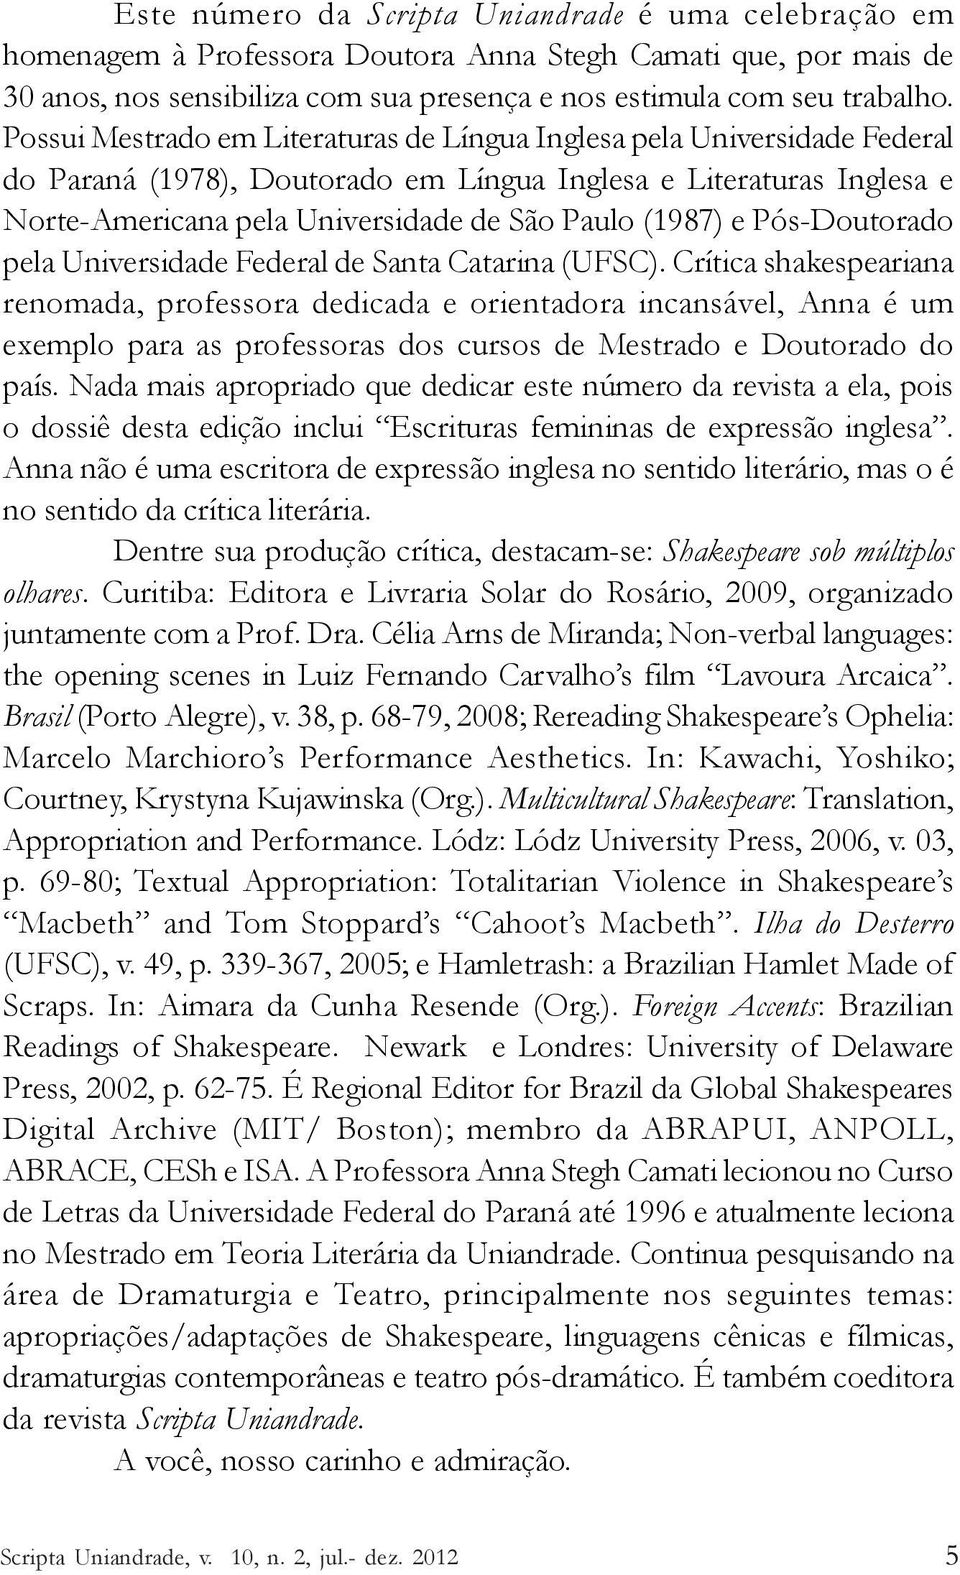 e Pós-Doutorado pela Universidade Federal de Santa Catarina (UFSC).